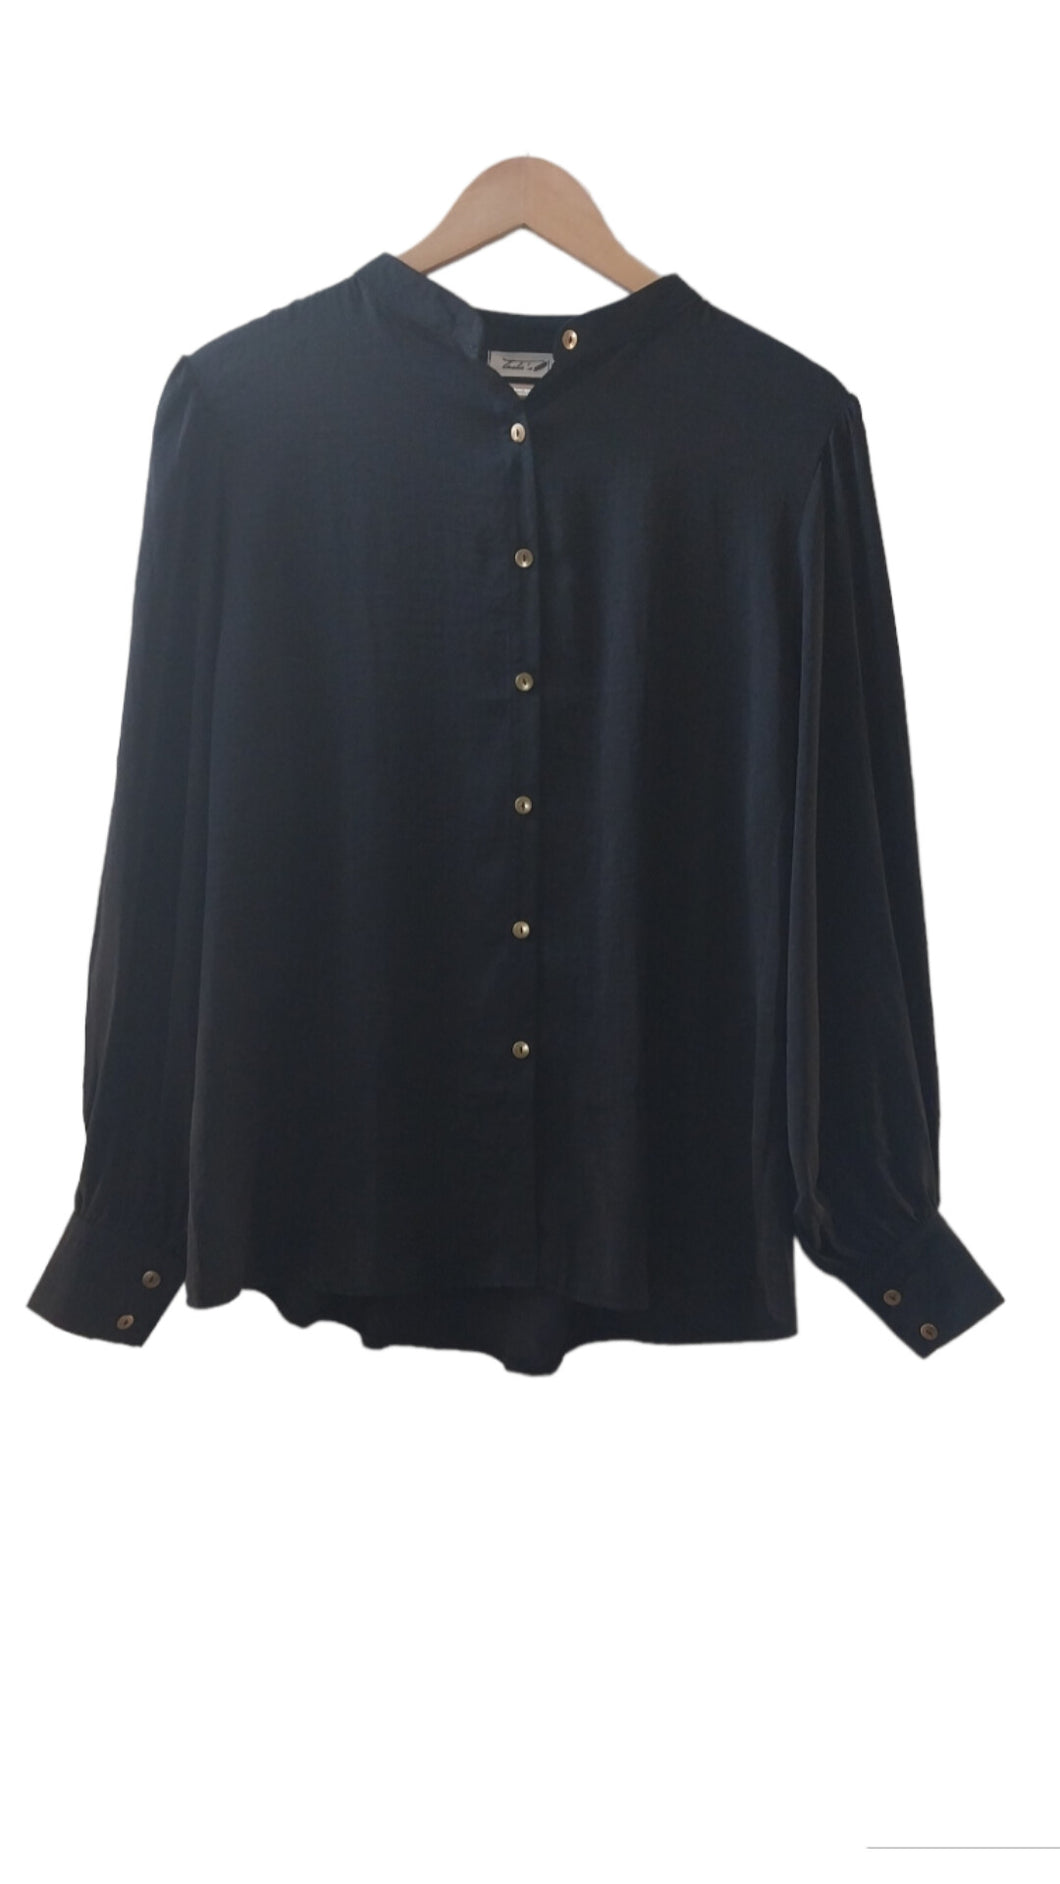 Indie blouse- black